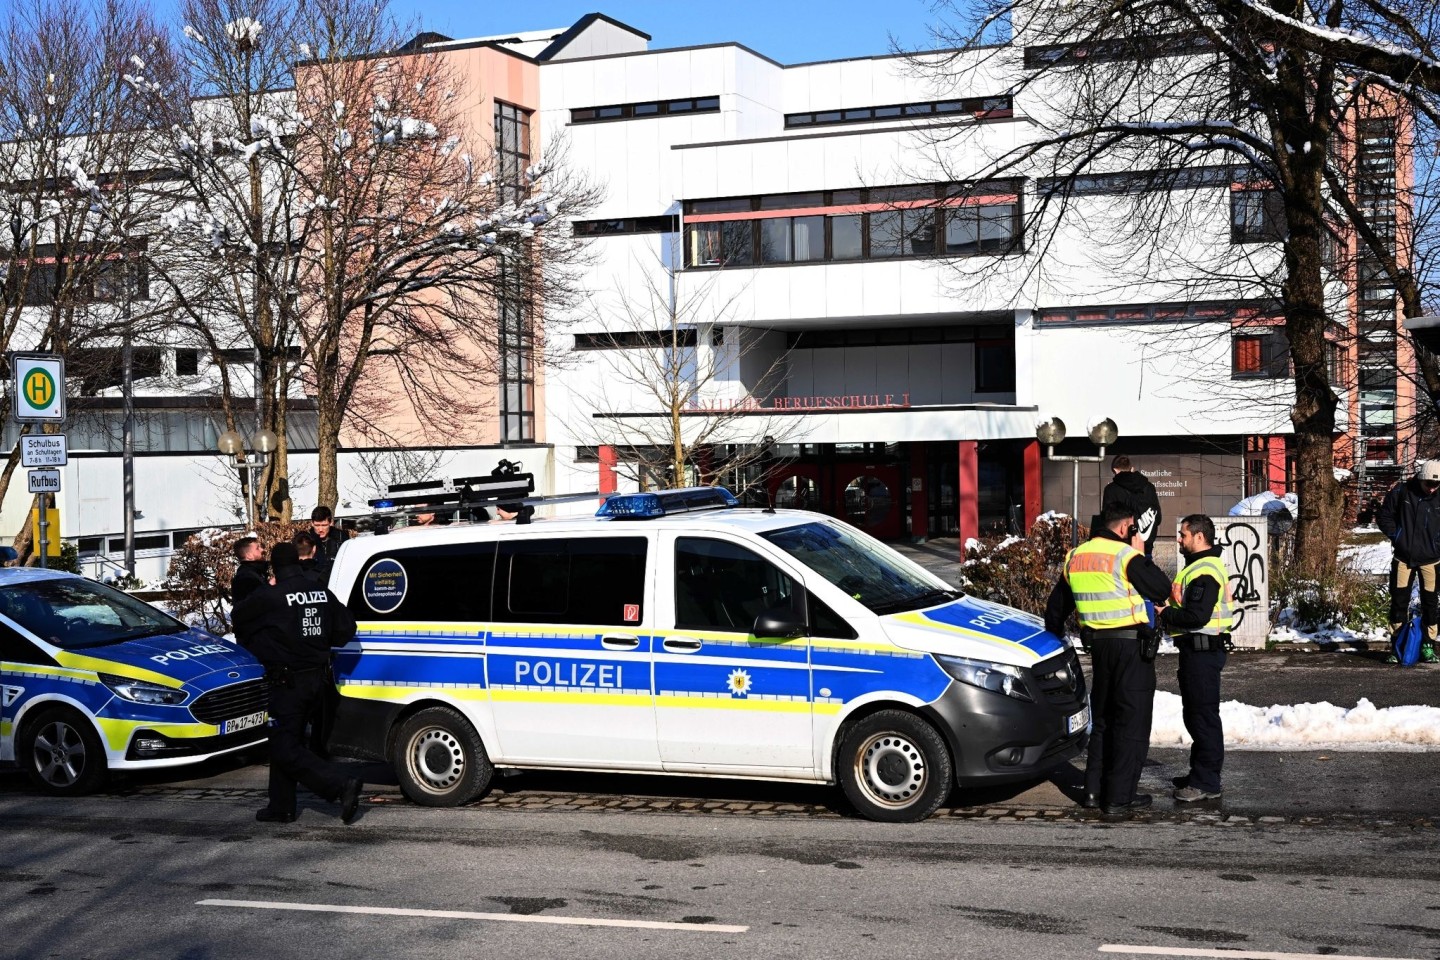 Polizeifahrzeuge und Polizisten stehen nach einem Großeinsatz an der Staatlichen Berufsschule I. in Traunstein.